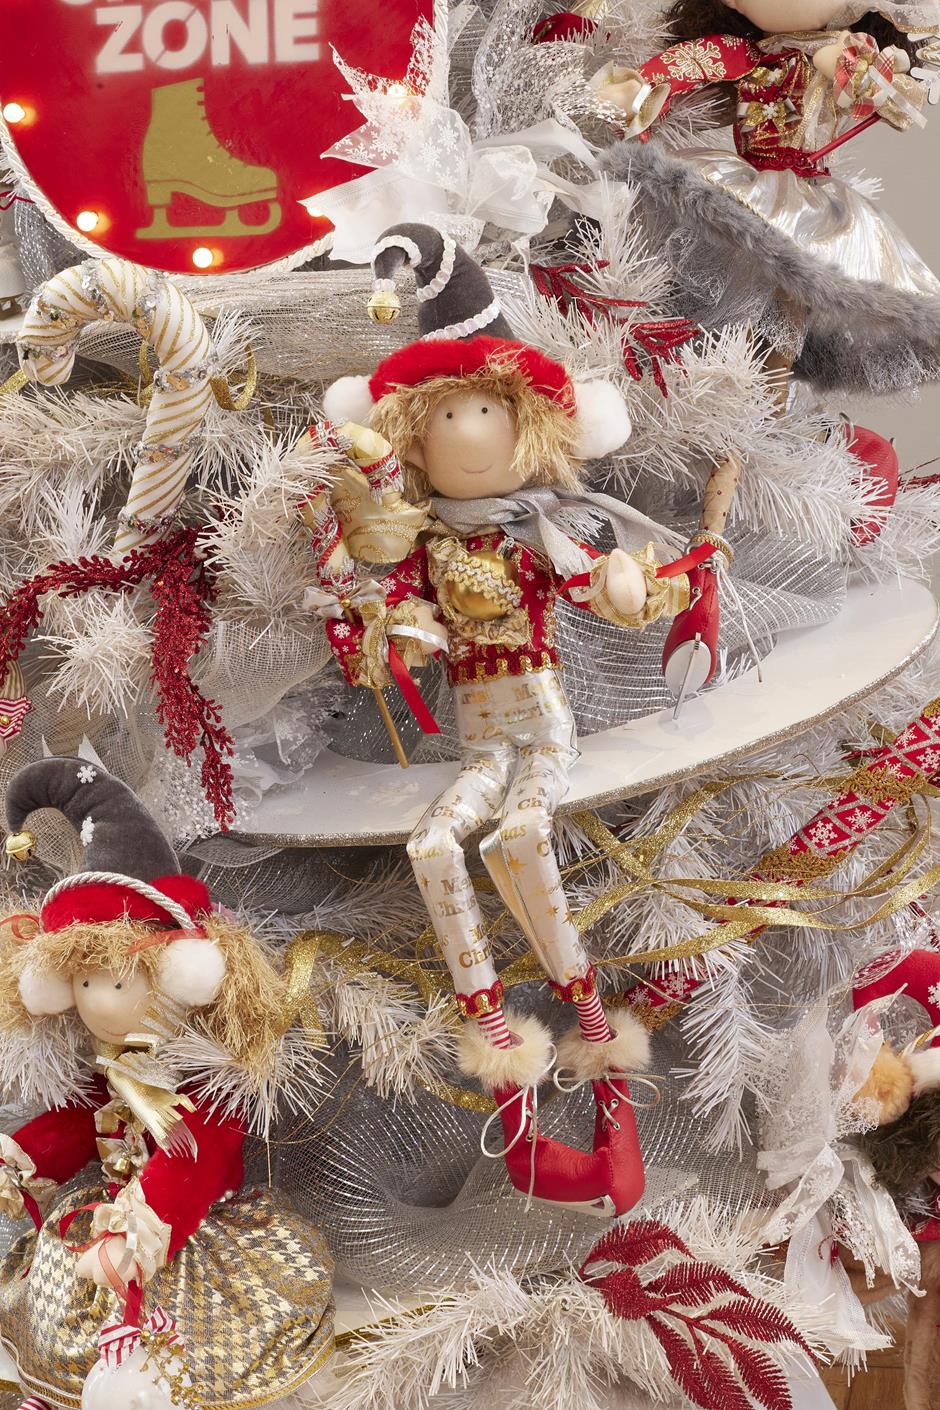 muñeco duende patinador de hielo, patines de hielo, ice skater, esfera, bastón caramelo, navidad, xmas handmade hecho a mano, rojo, blanco, dorado, plata, queca designs